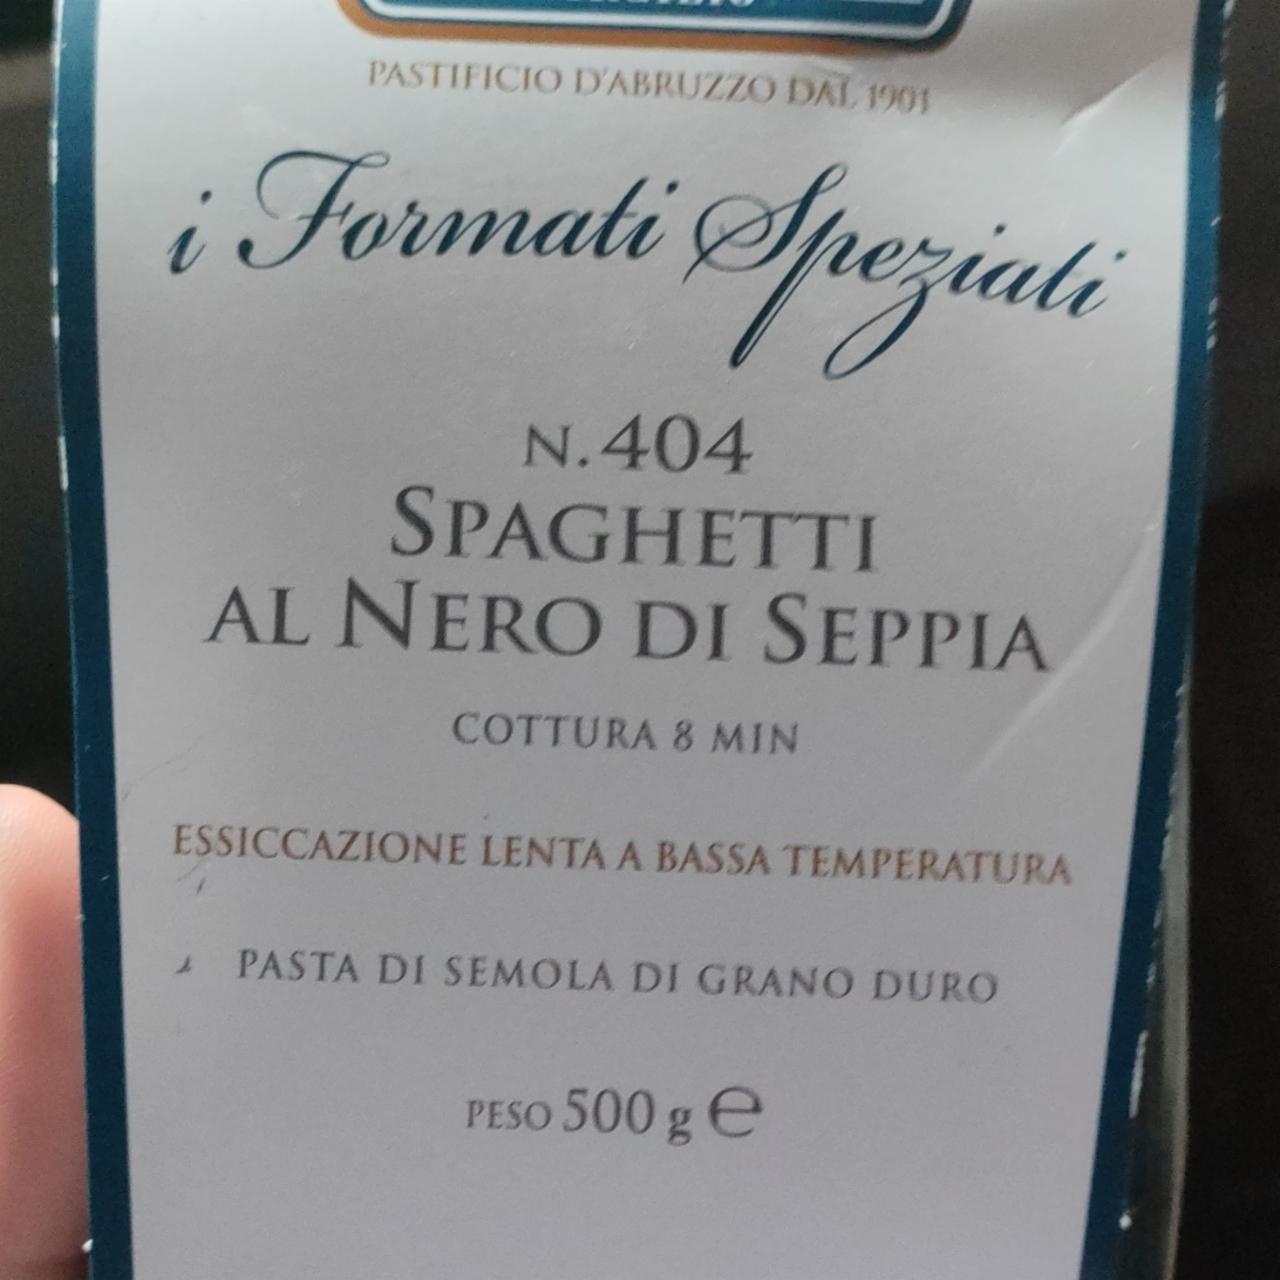 Zdjęcia - Spaghetti al nero di seppia n 404 Formati Speziati